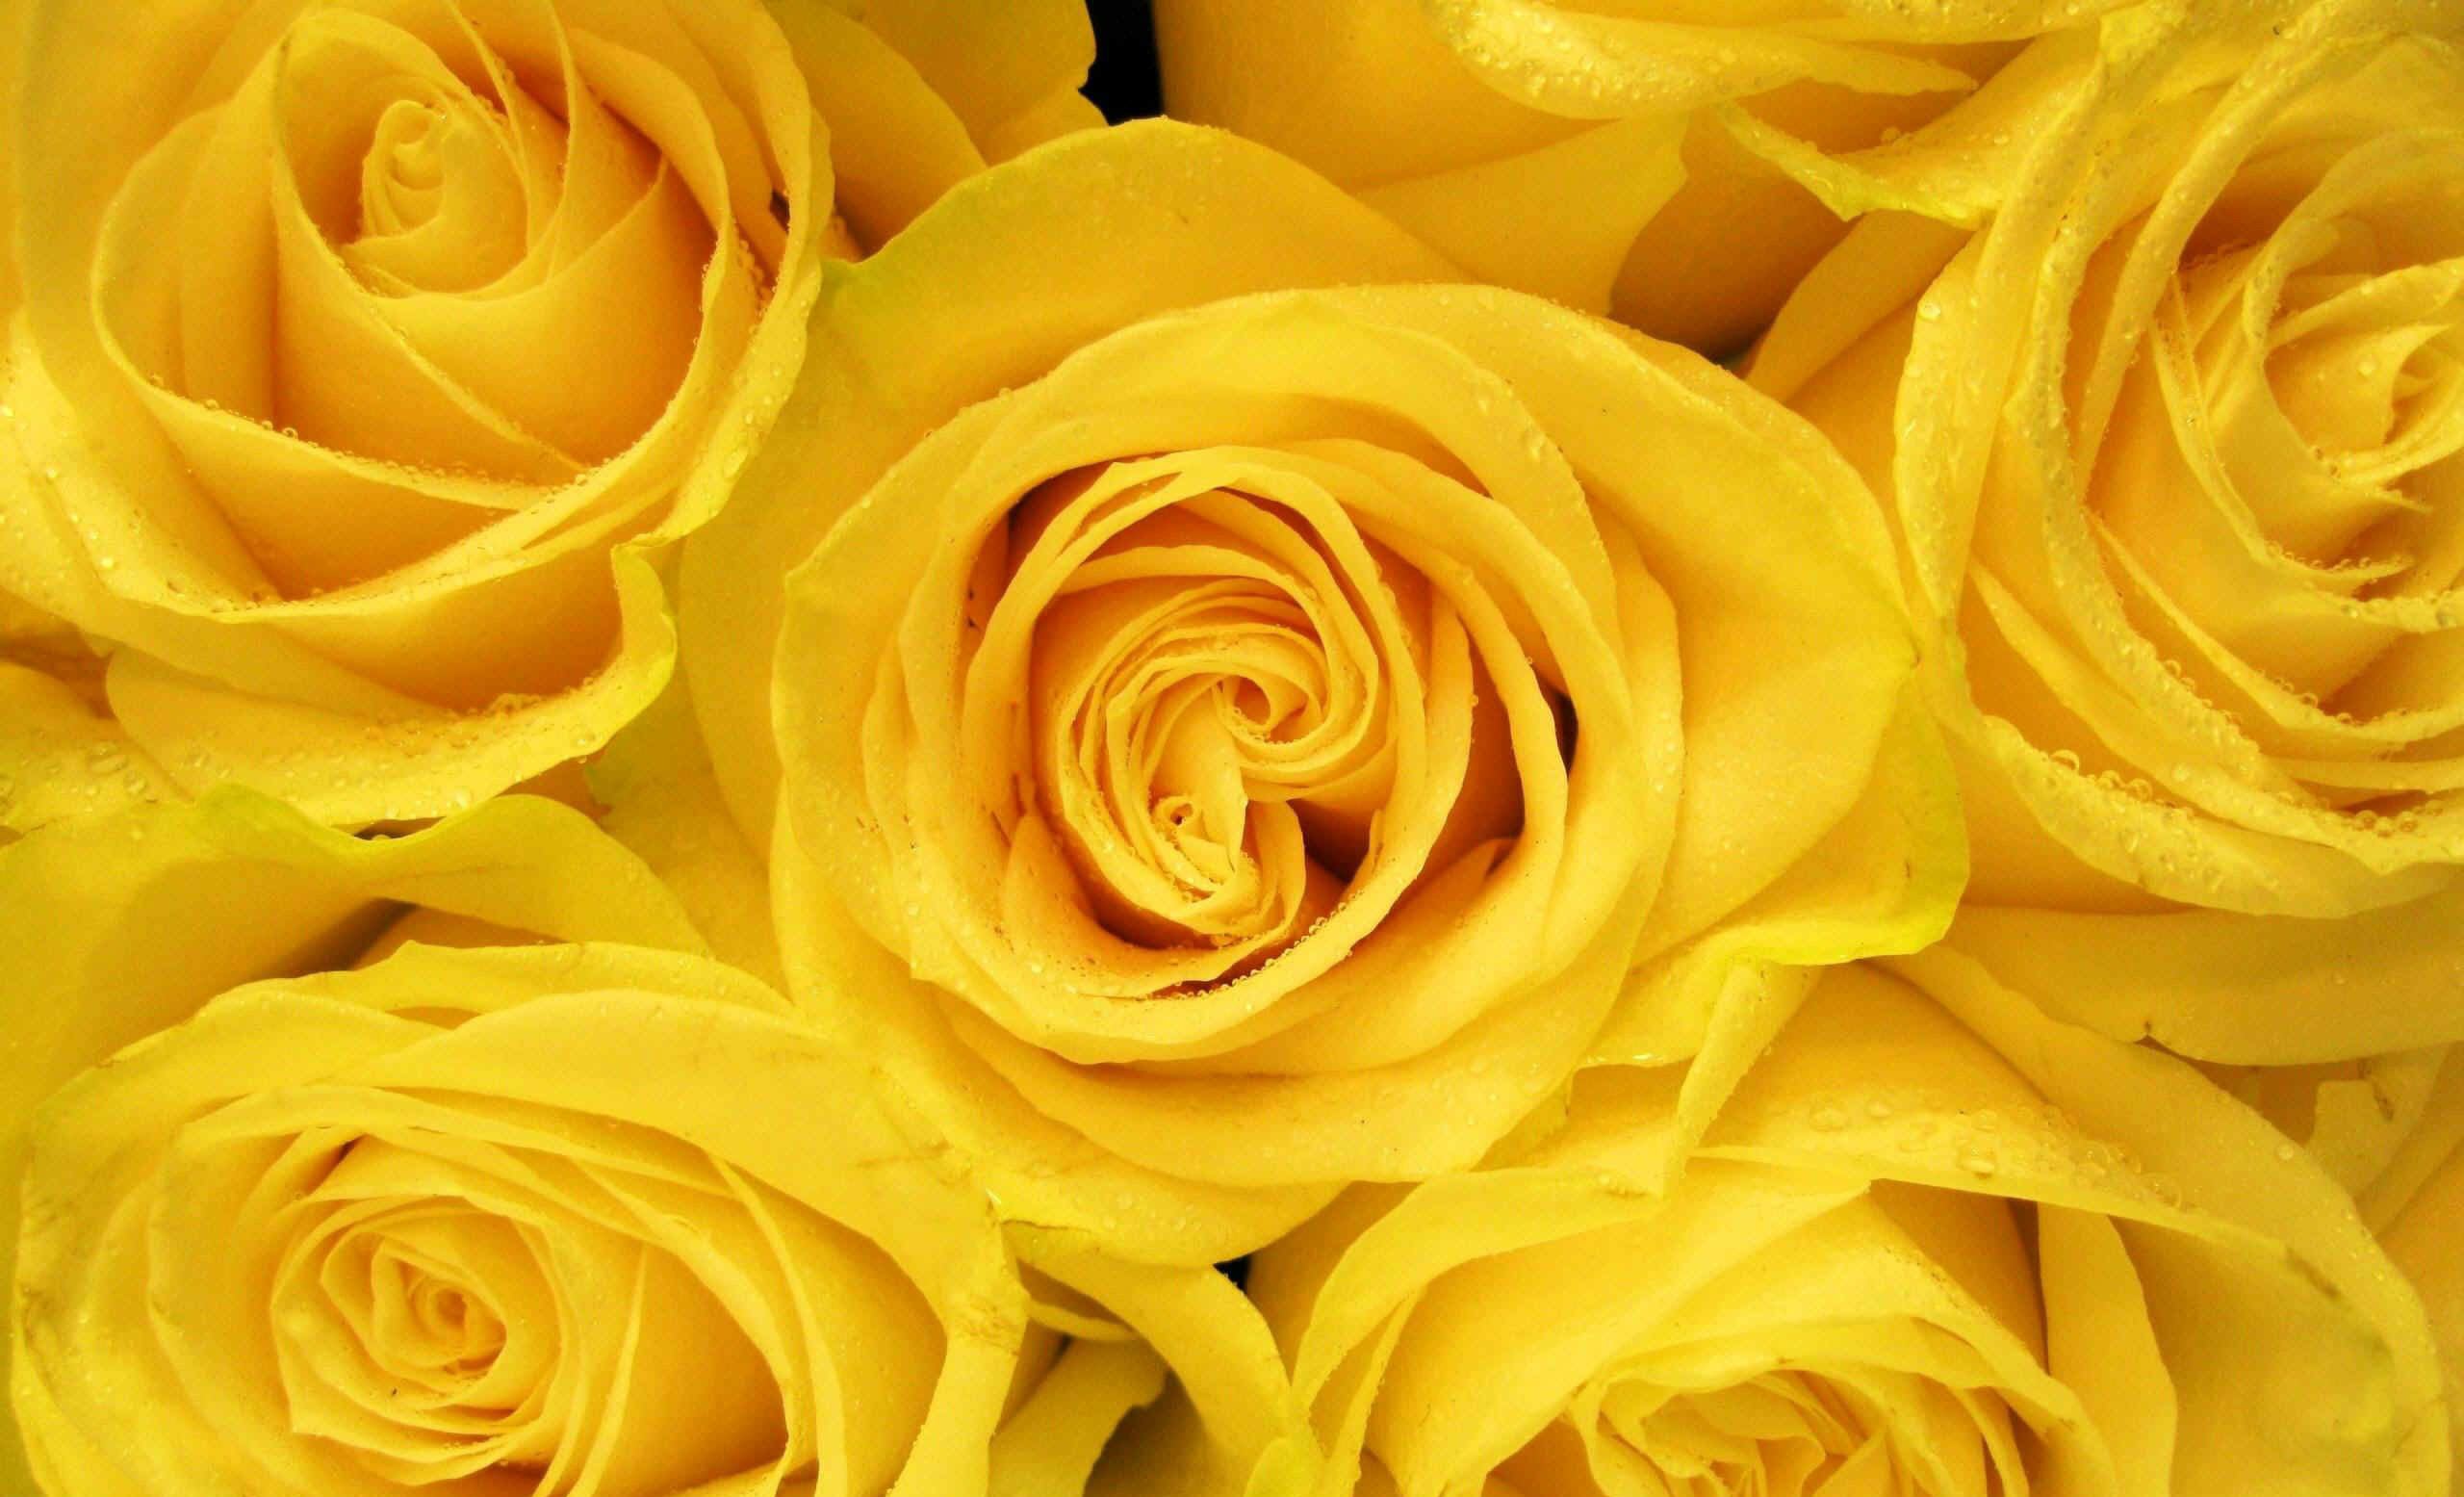 Chi tiết nhiều hơn 104 hình nền hoa hồng vàng 3d tuyệt vời nhất   thdonghoadian